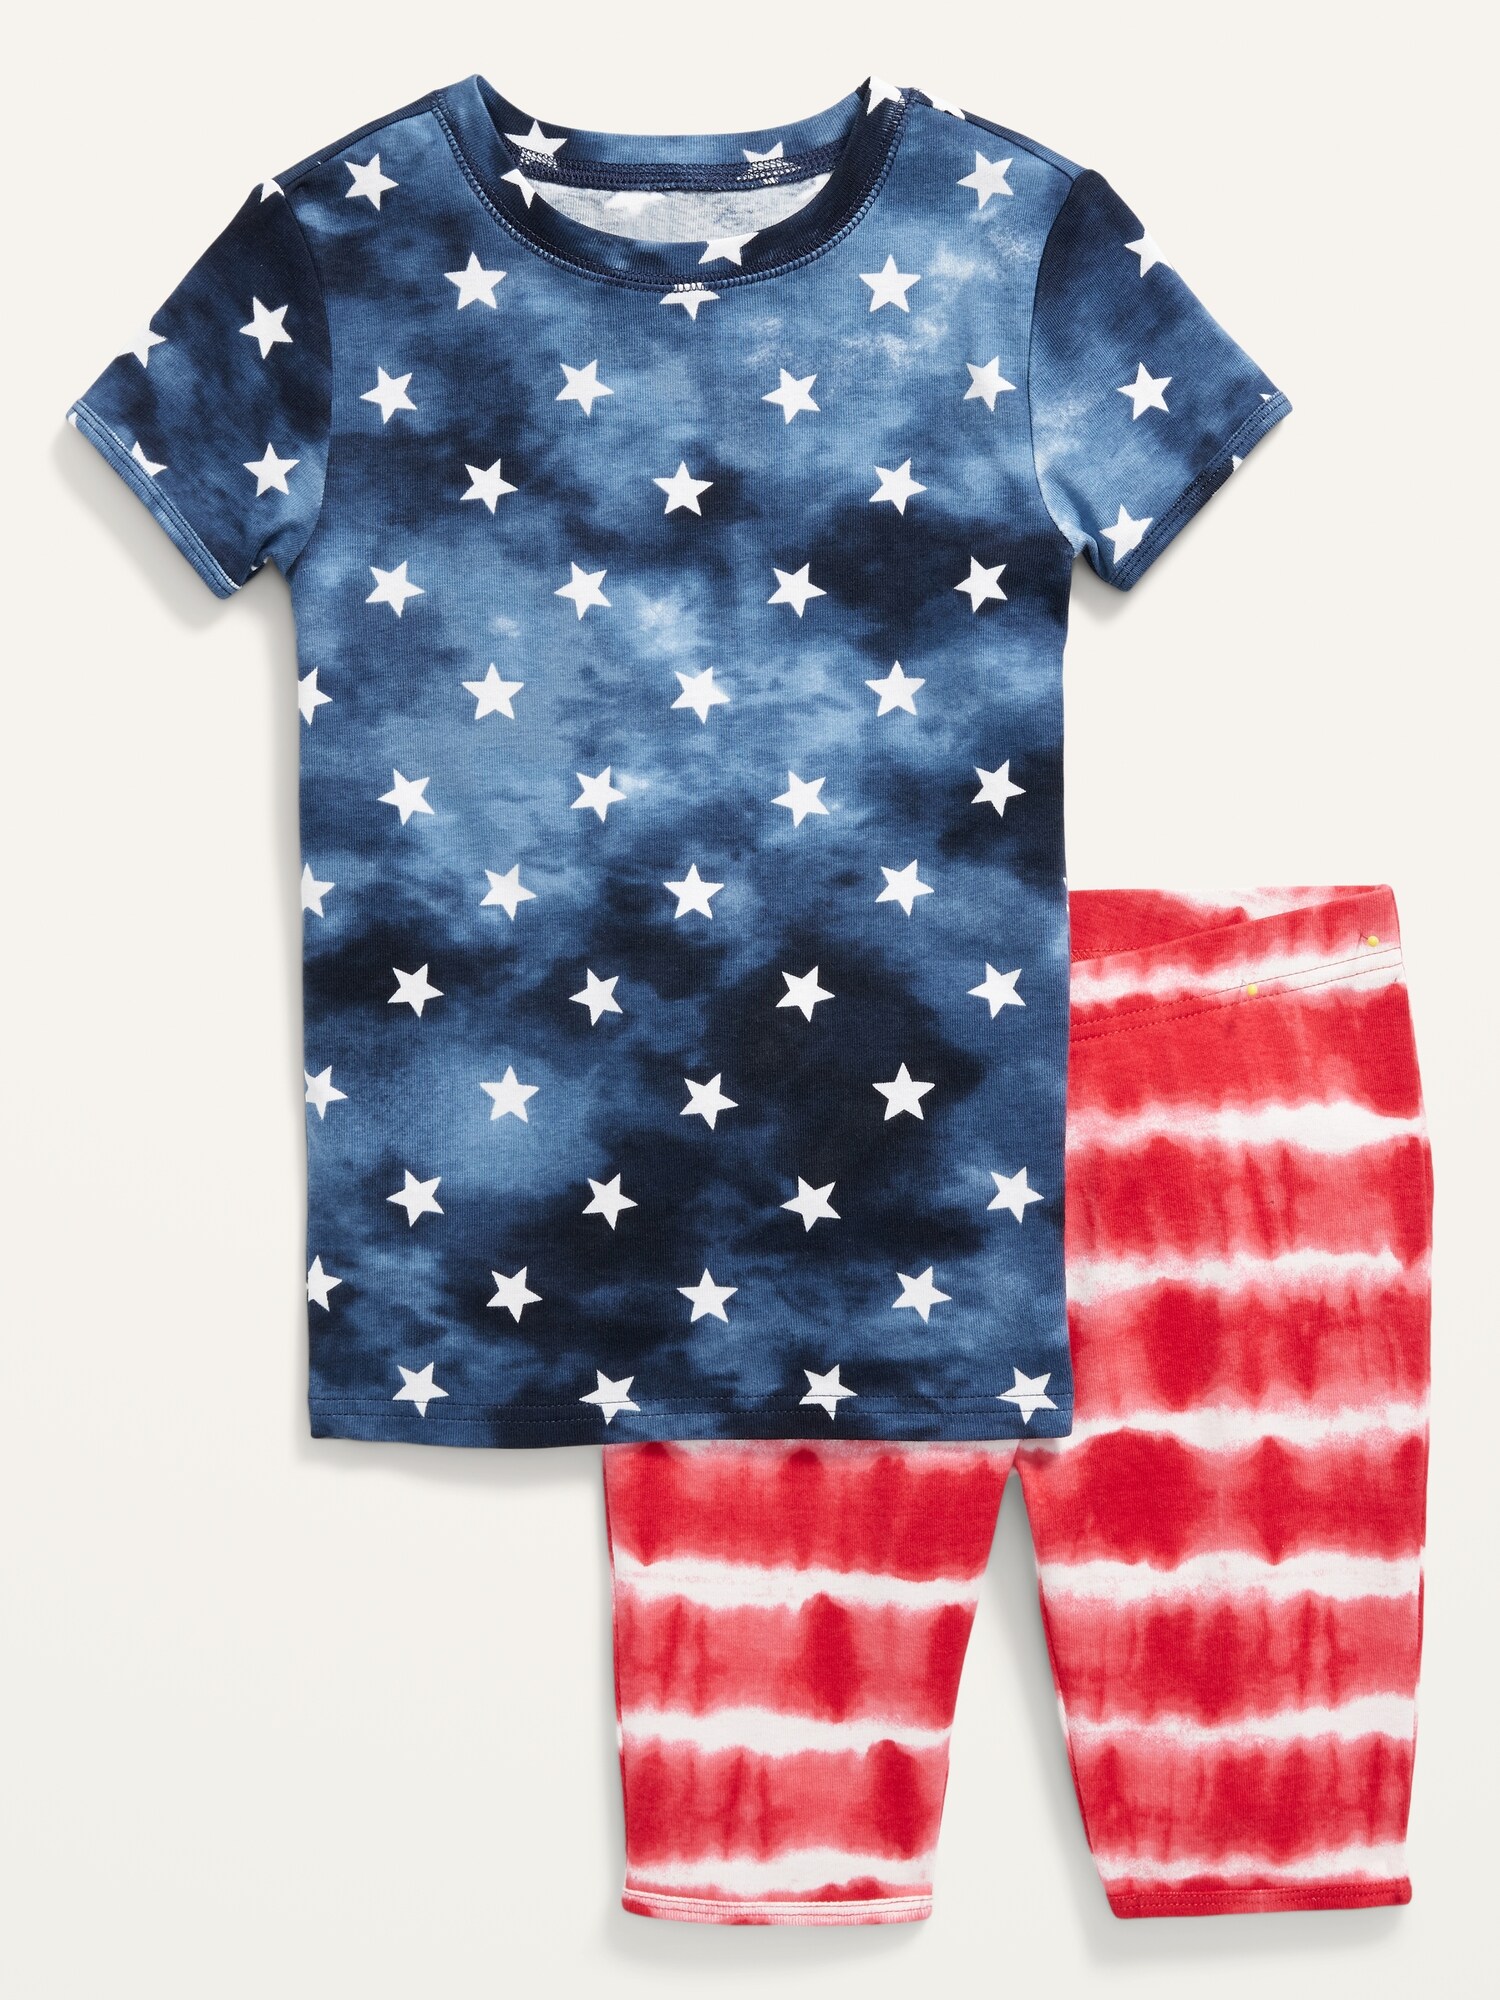 Gender-Neutral Snug-Fit Pajama Set For Kids | Old Navy